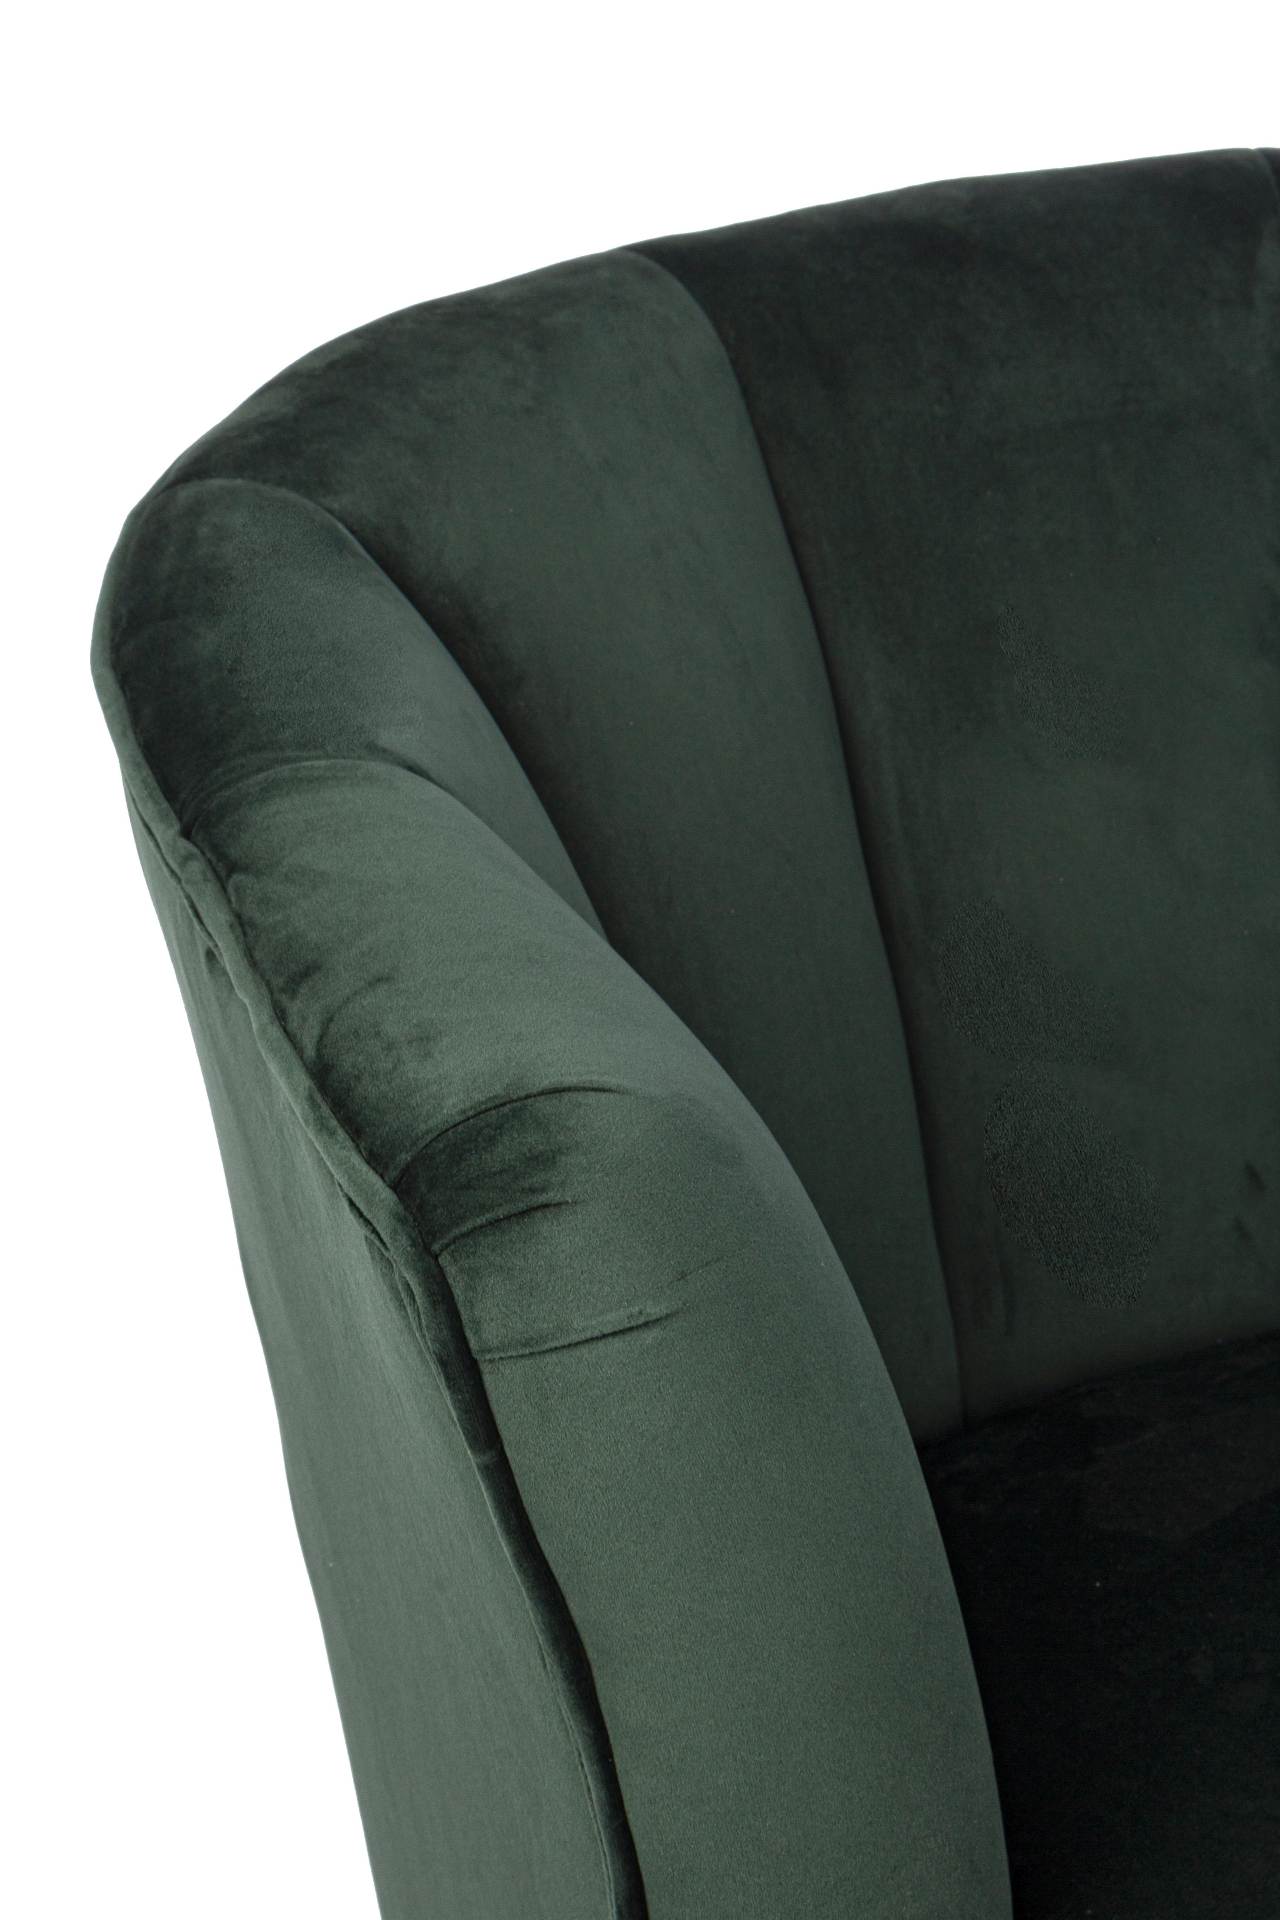 Der Sessel Odilon überzeugt mit seinem modernen Design. Gefertigt wurde er aus Stoff in Samt-Optik, welcher einen grünen Farbton besitzt. Das Gestell ist aus Metall und hat eine schwarze Farbe. Der Sessel besitzt eine Sitzhöhe von 45 cm. Die Breite beträg